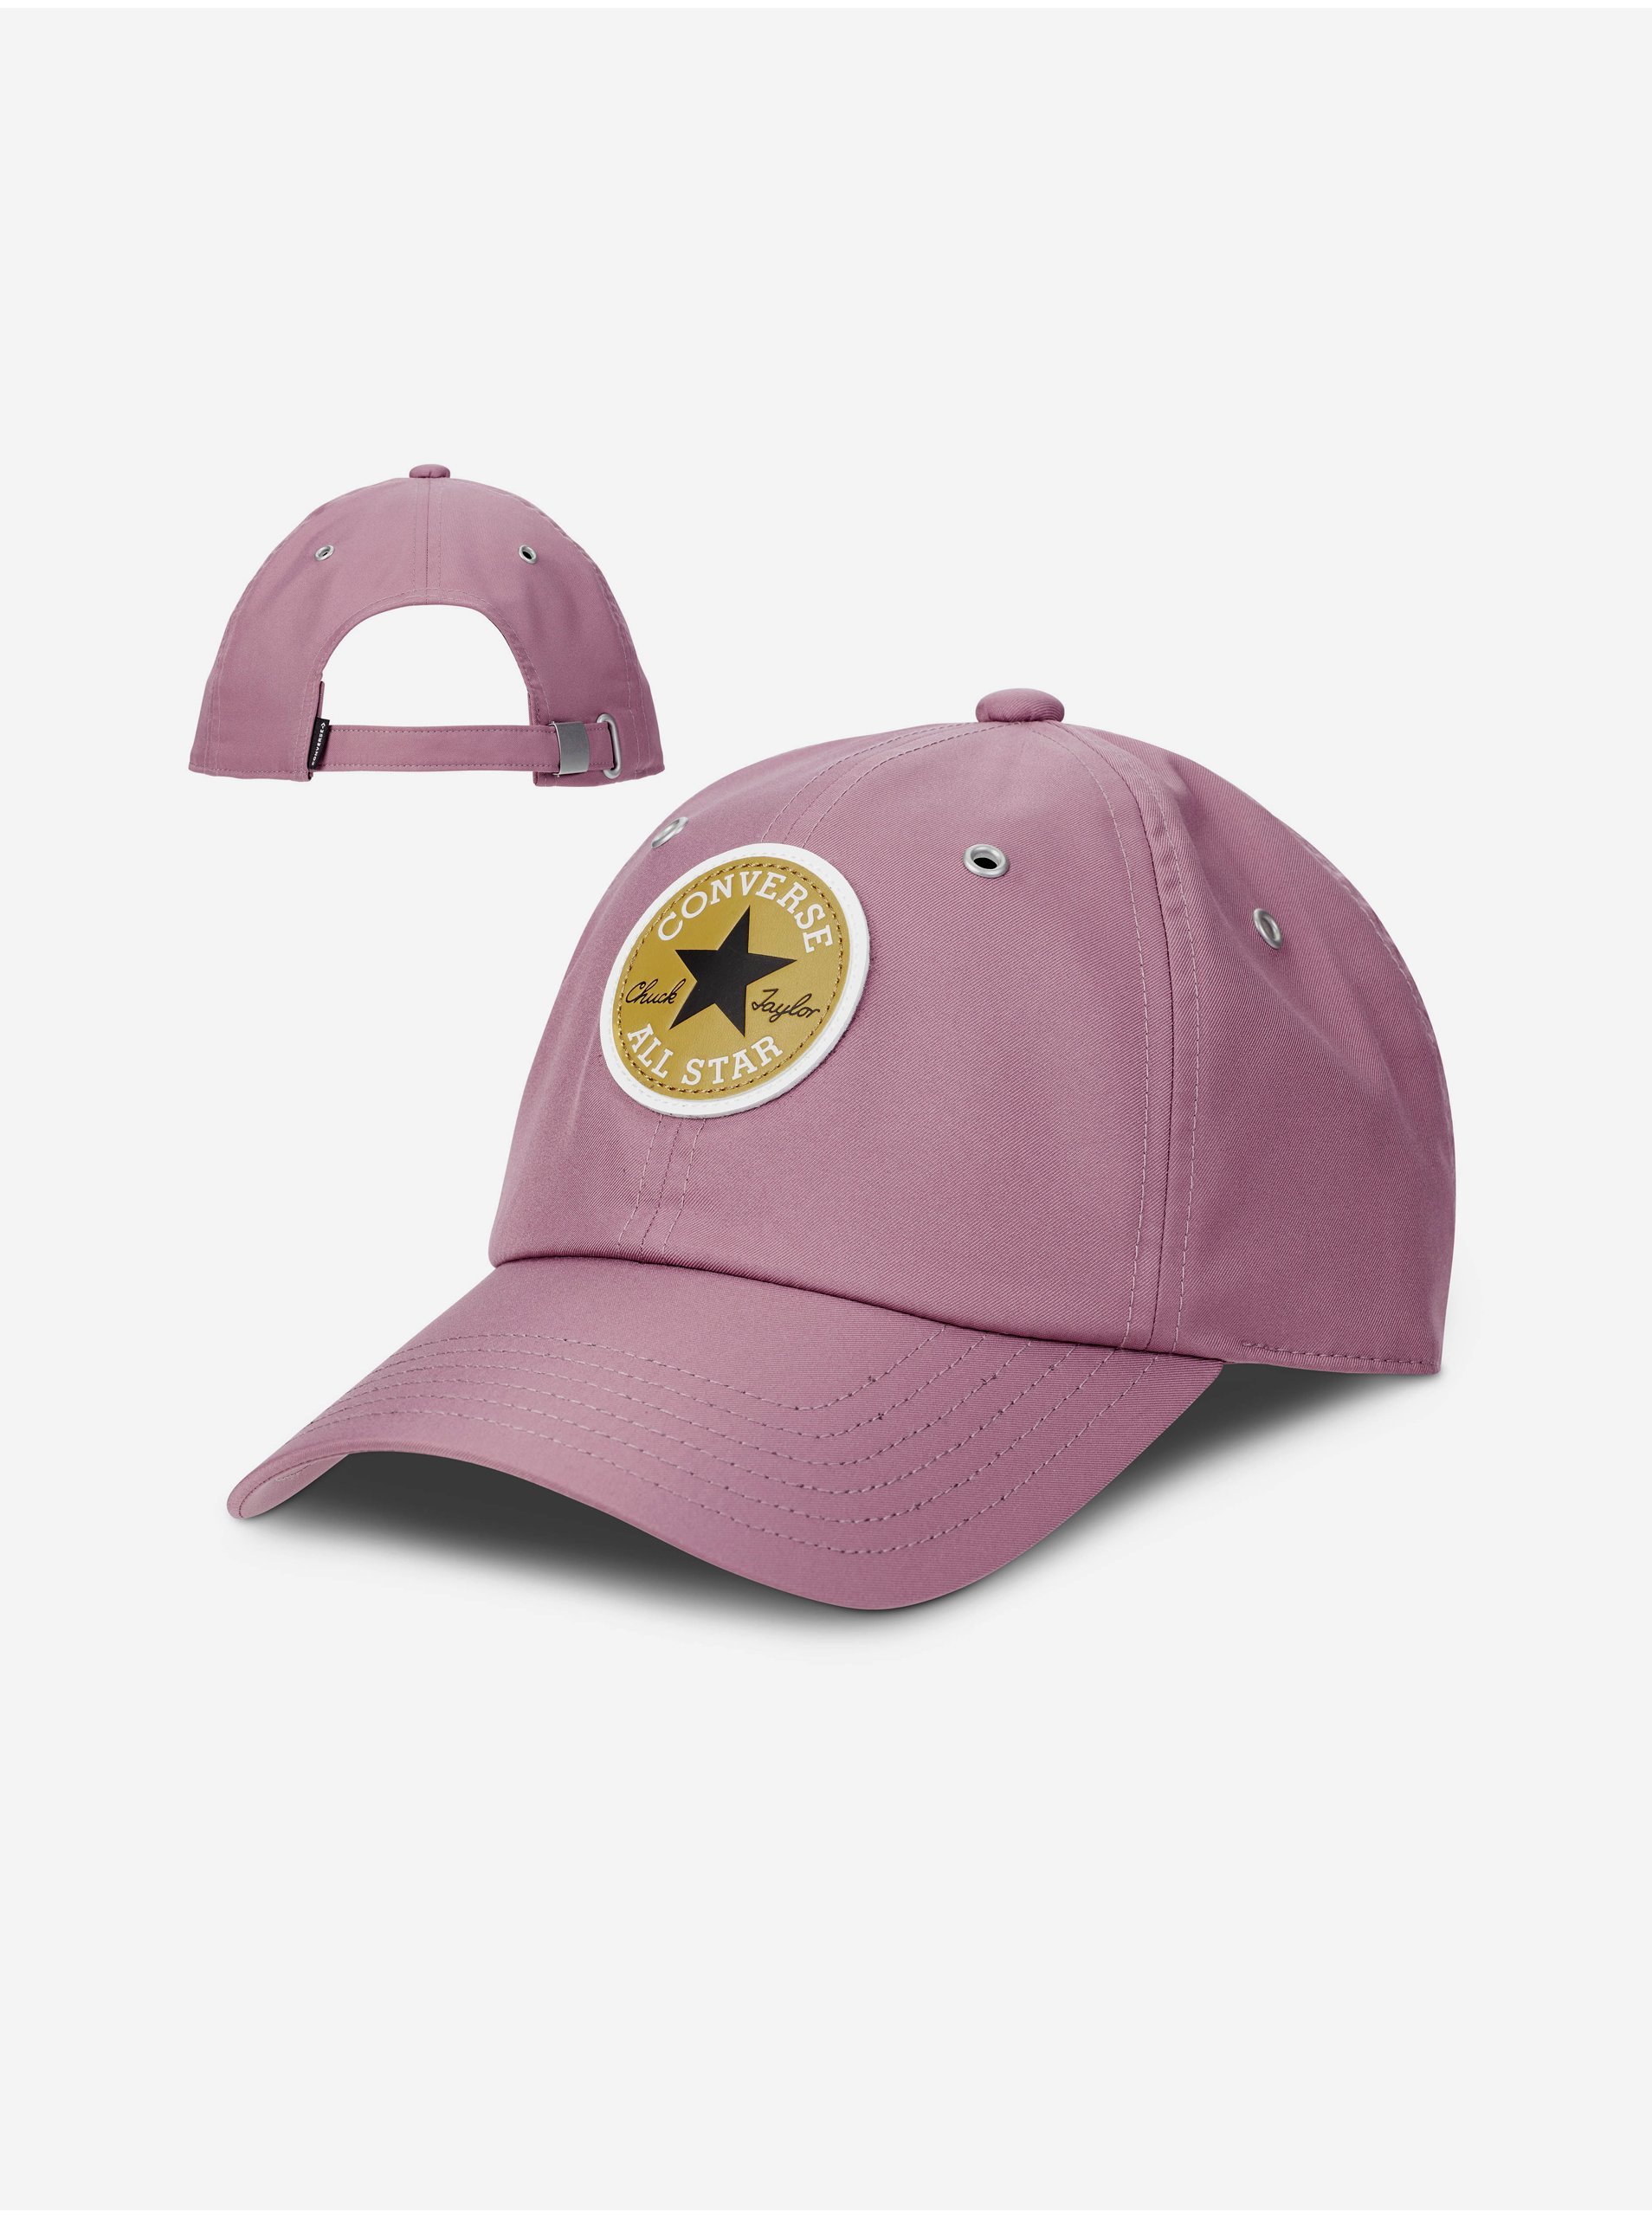 Pink Cap Converse - Women